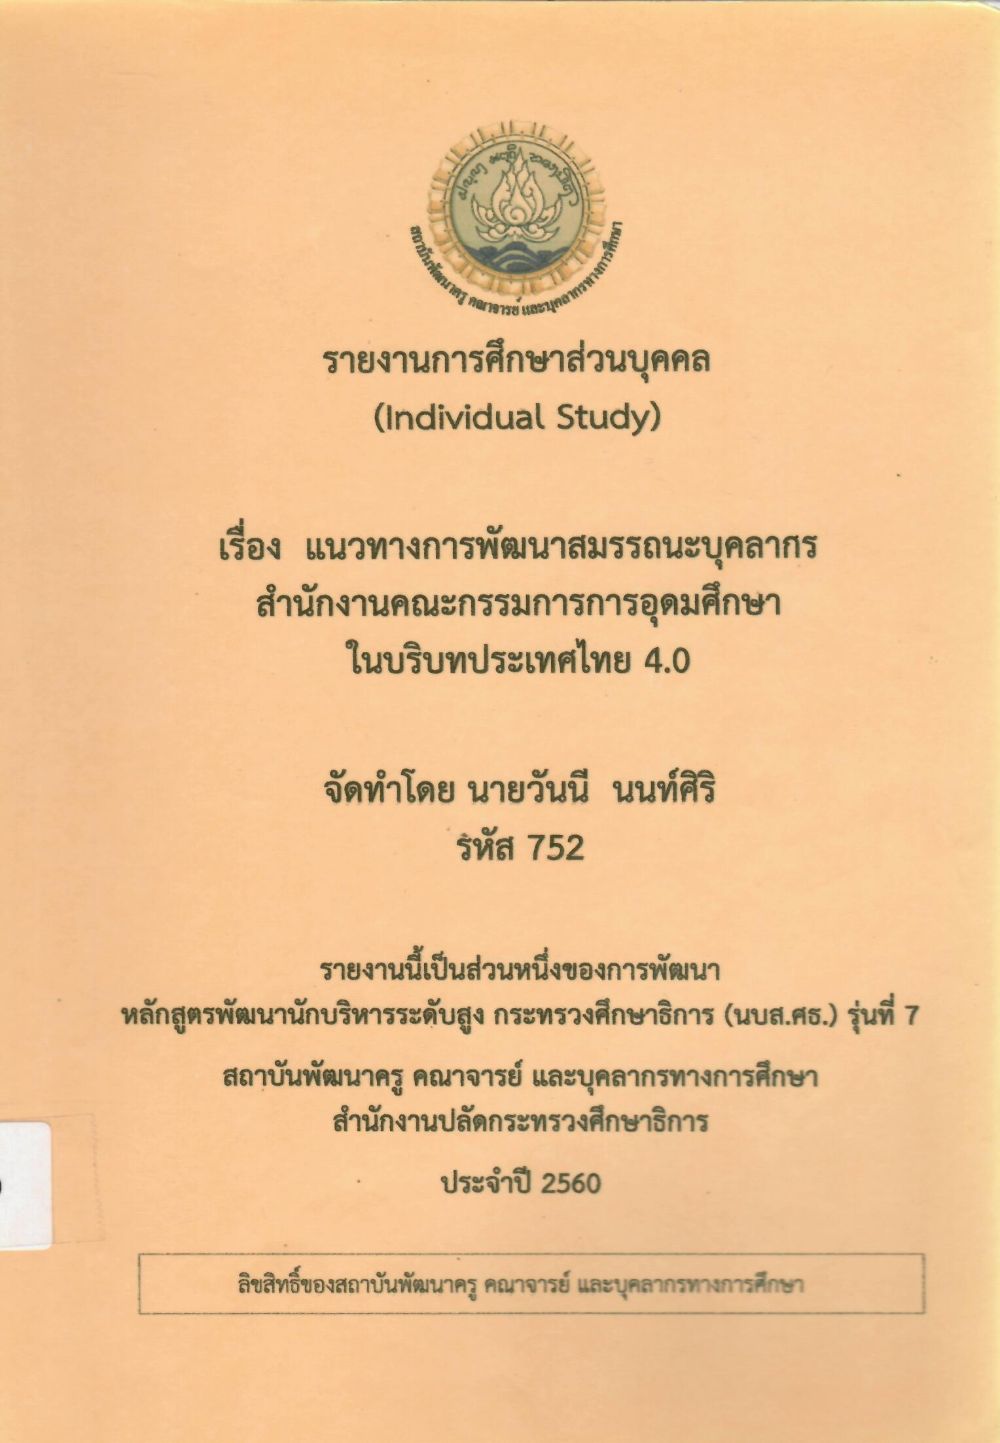 แนวทางการพัฒนาสมรรถนะบุคลากร สำนักงานคณะกรรมการการอุดมศึกษาในบริบทประเทศไทย 4.0: รายงานการศึกษาส่วนบุคคล (Individual Study)/ วันนี นนท์ศิริ